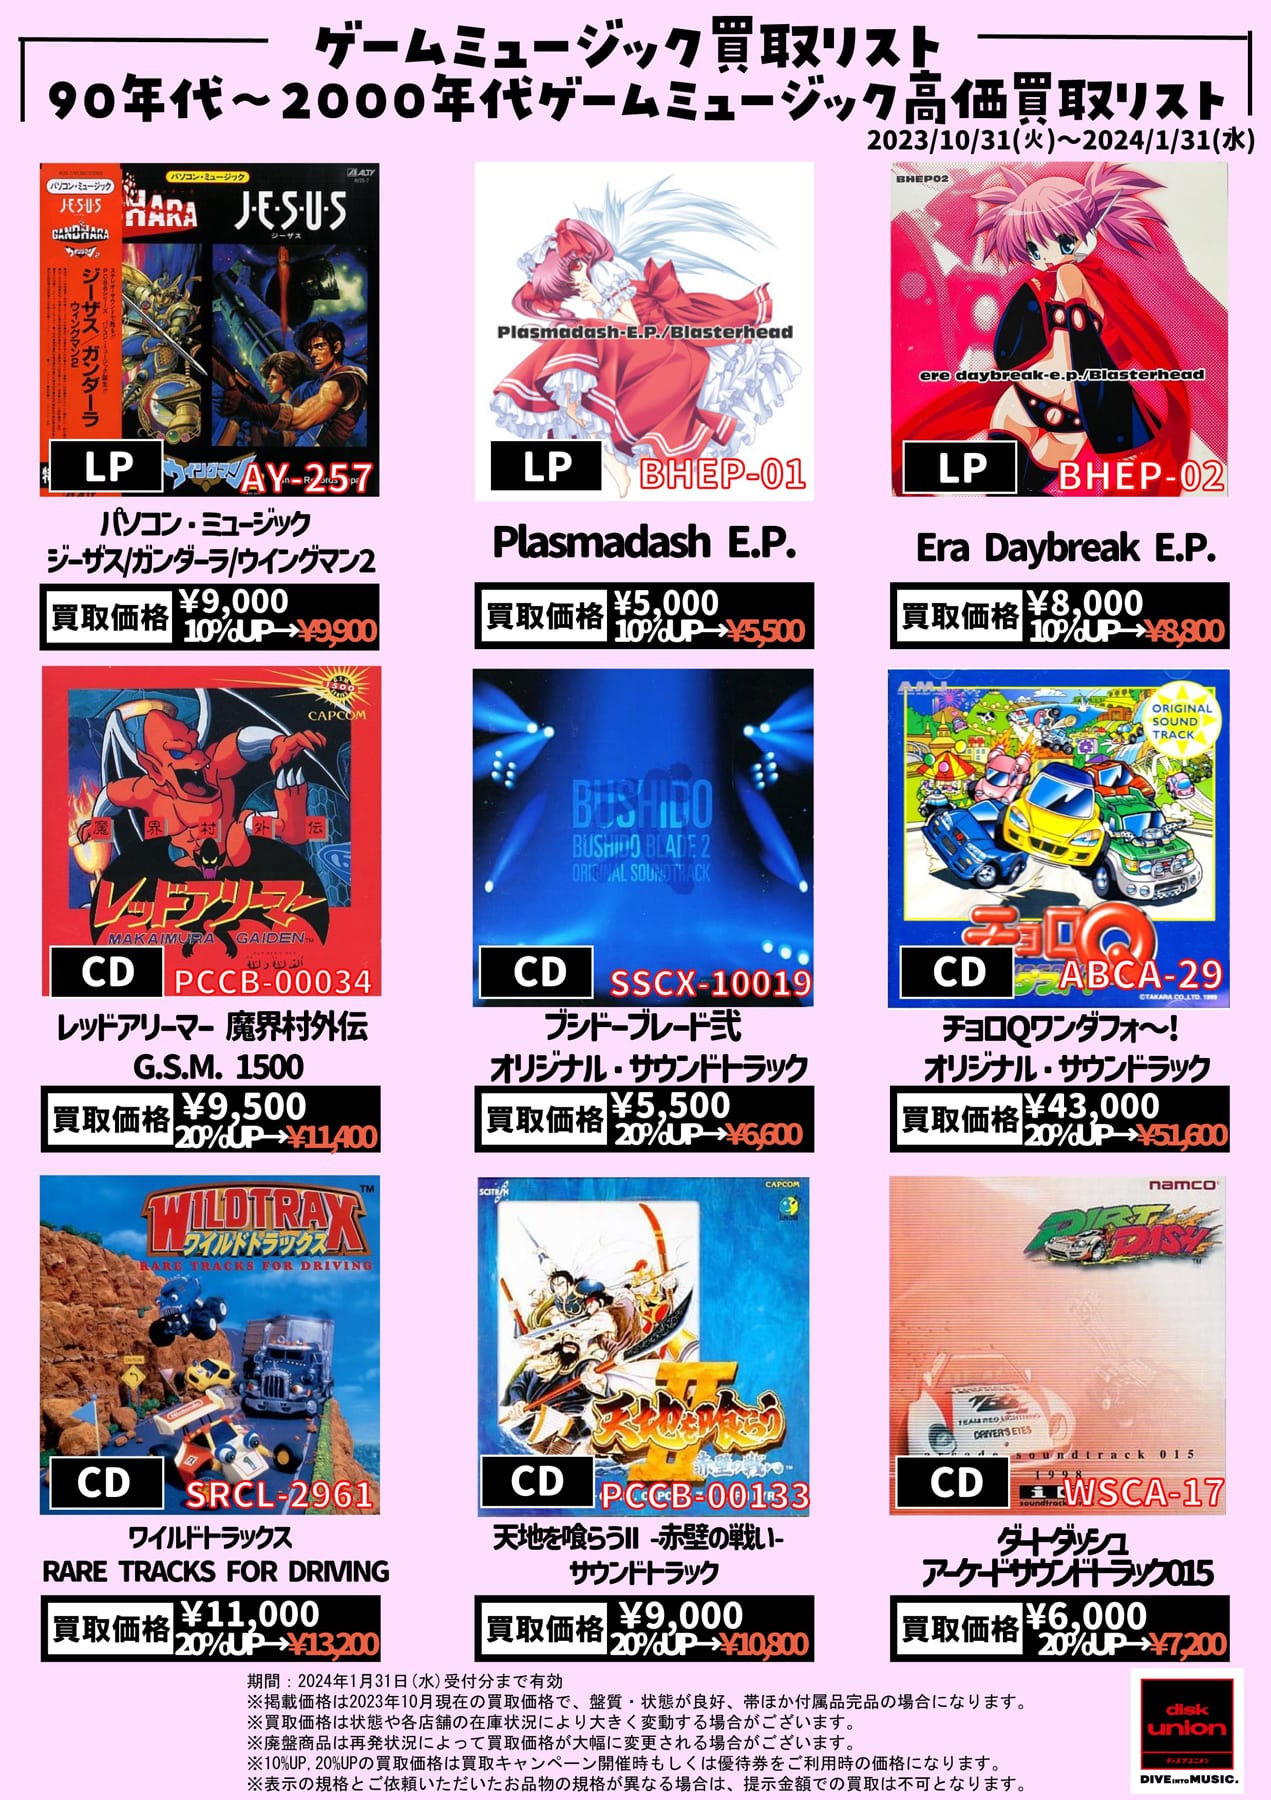 【ゲームミュージック】90年代~2000年代ゲームミュージック高価買取リスト